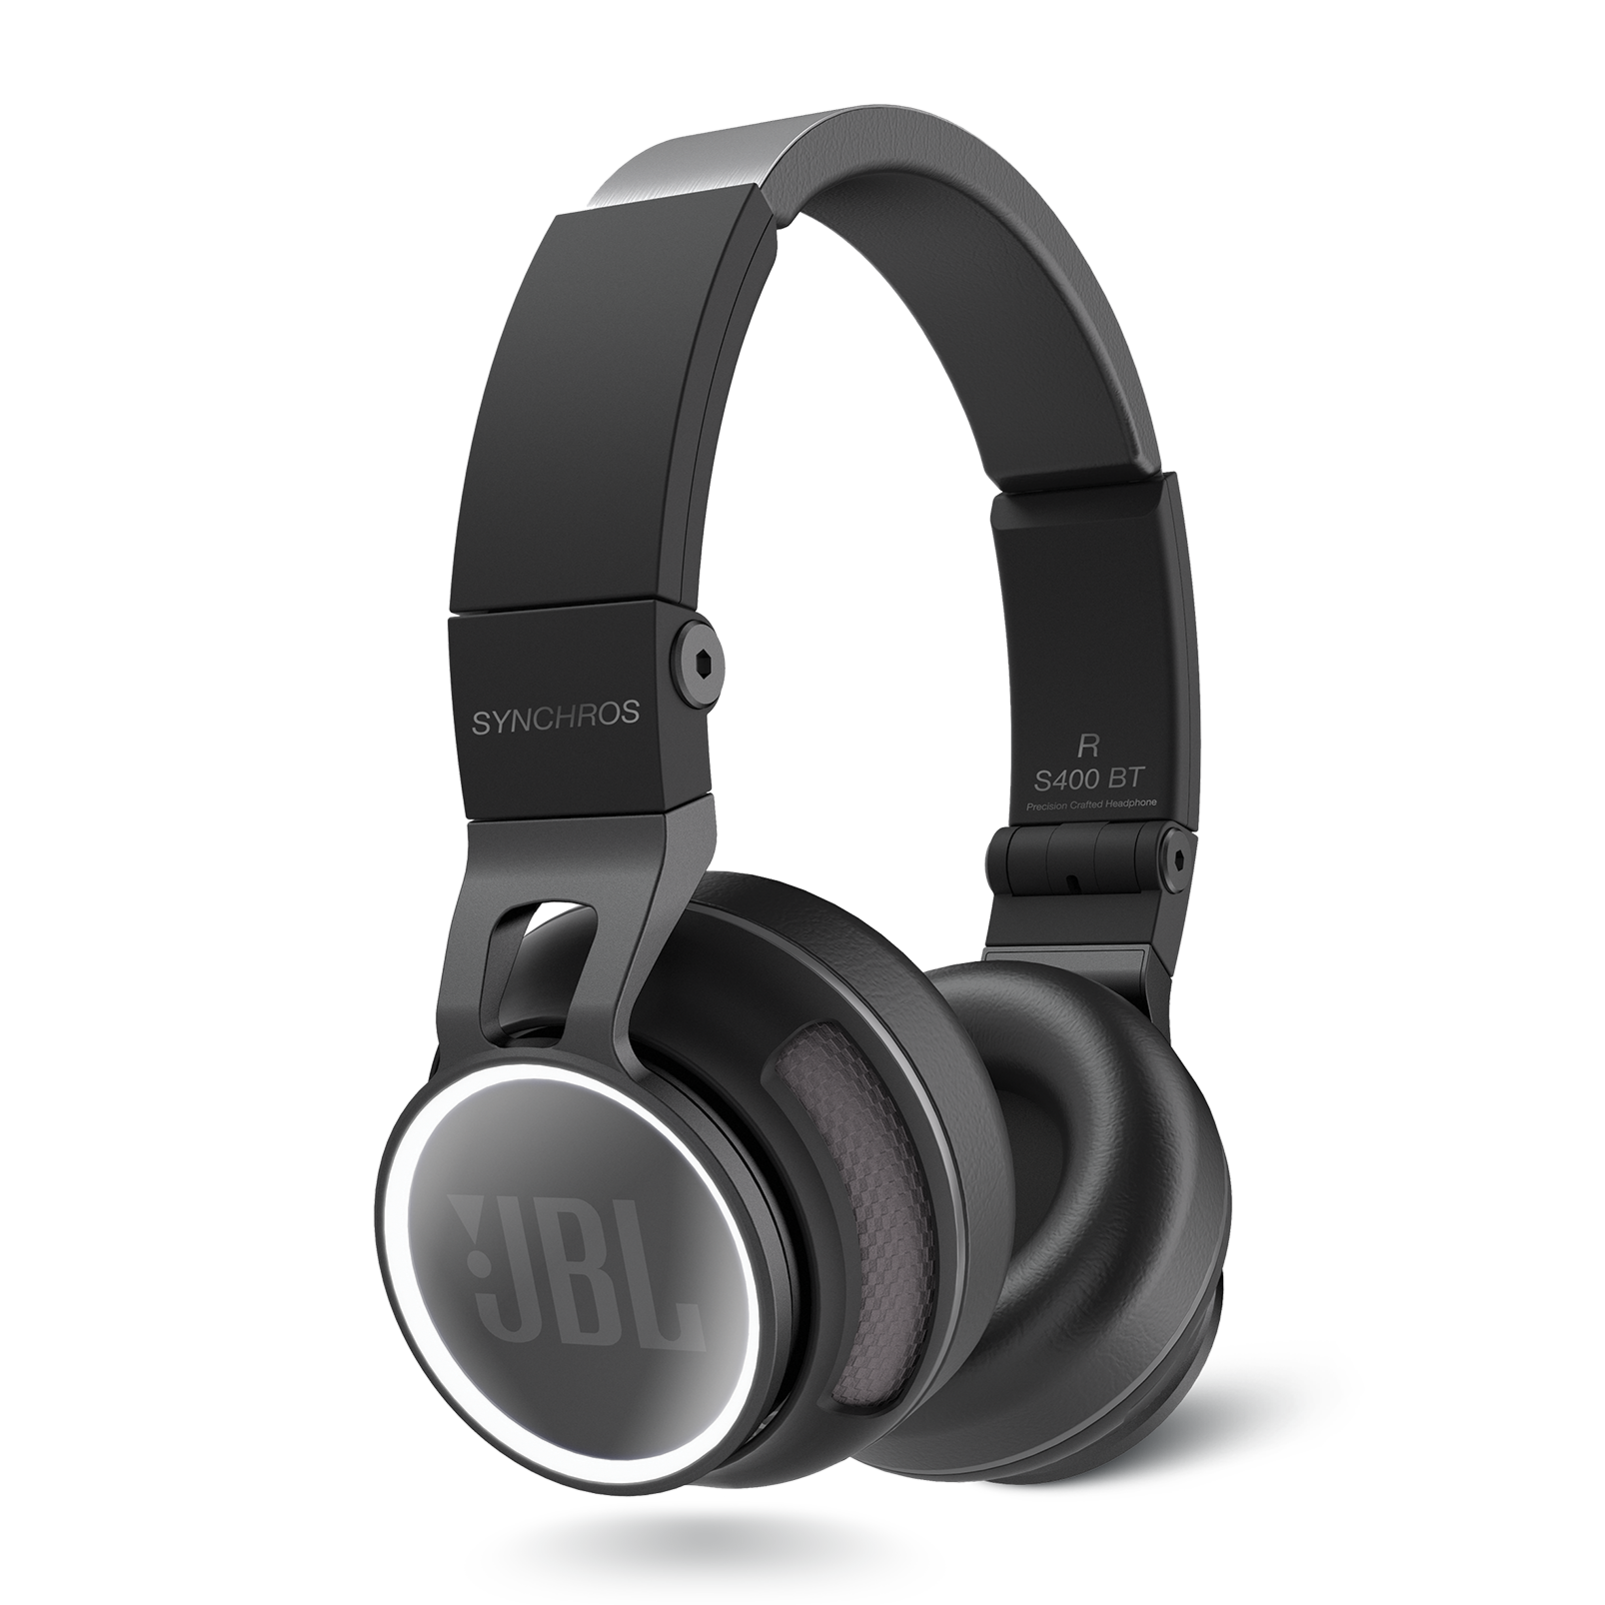 JBL Original Audio Câble avec contrôle du volume et microphone vers casque JBL Synchros S300 S400 S500 S700 E30 E40BT etc